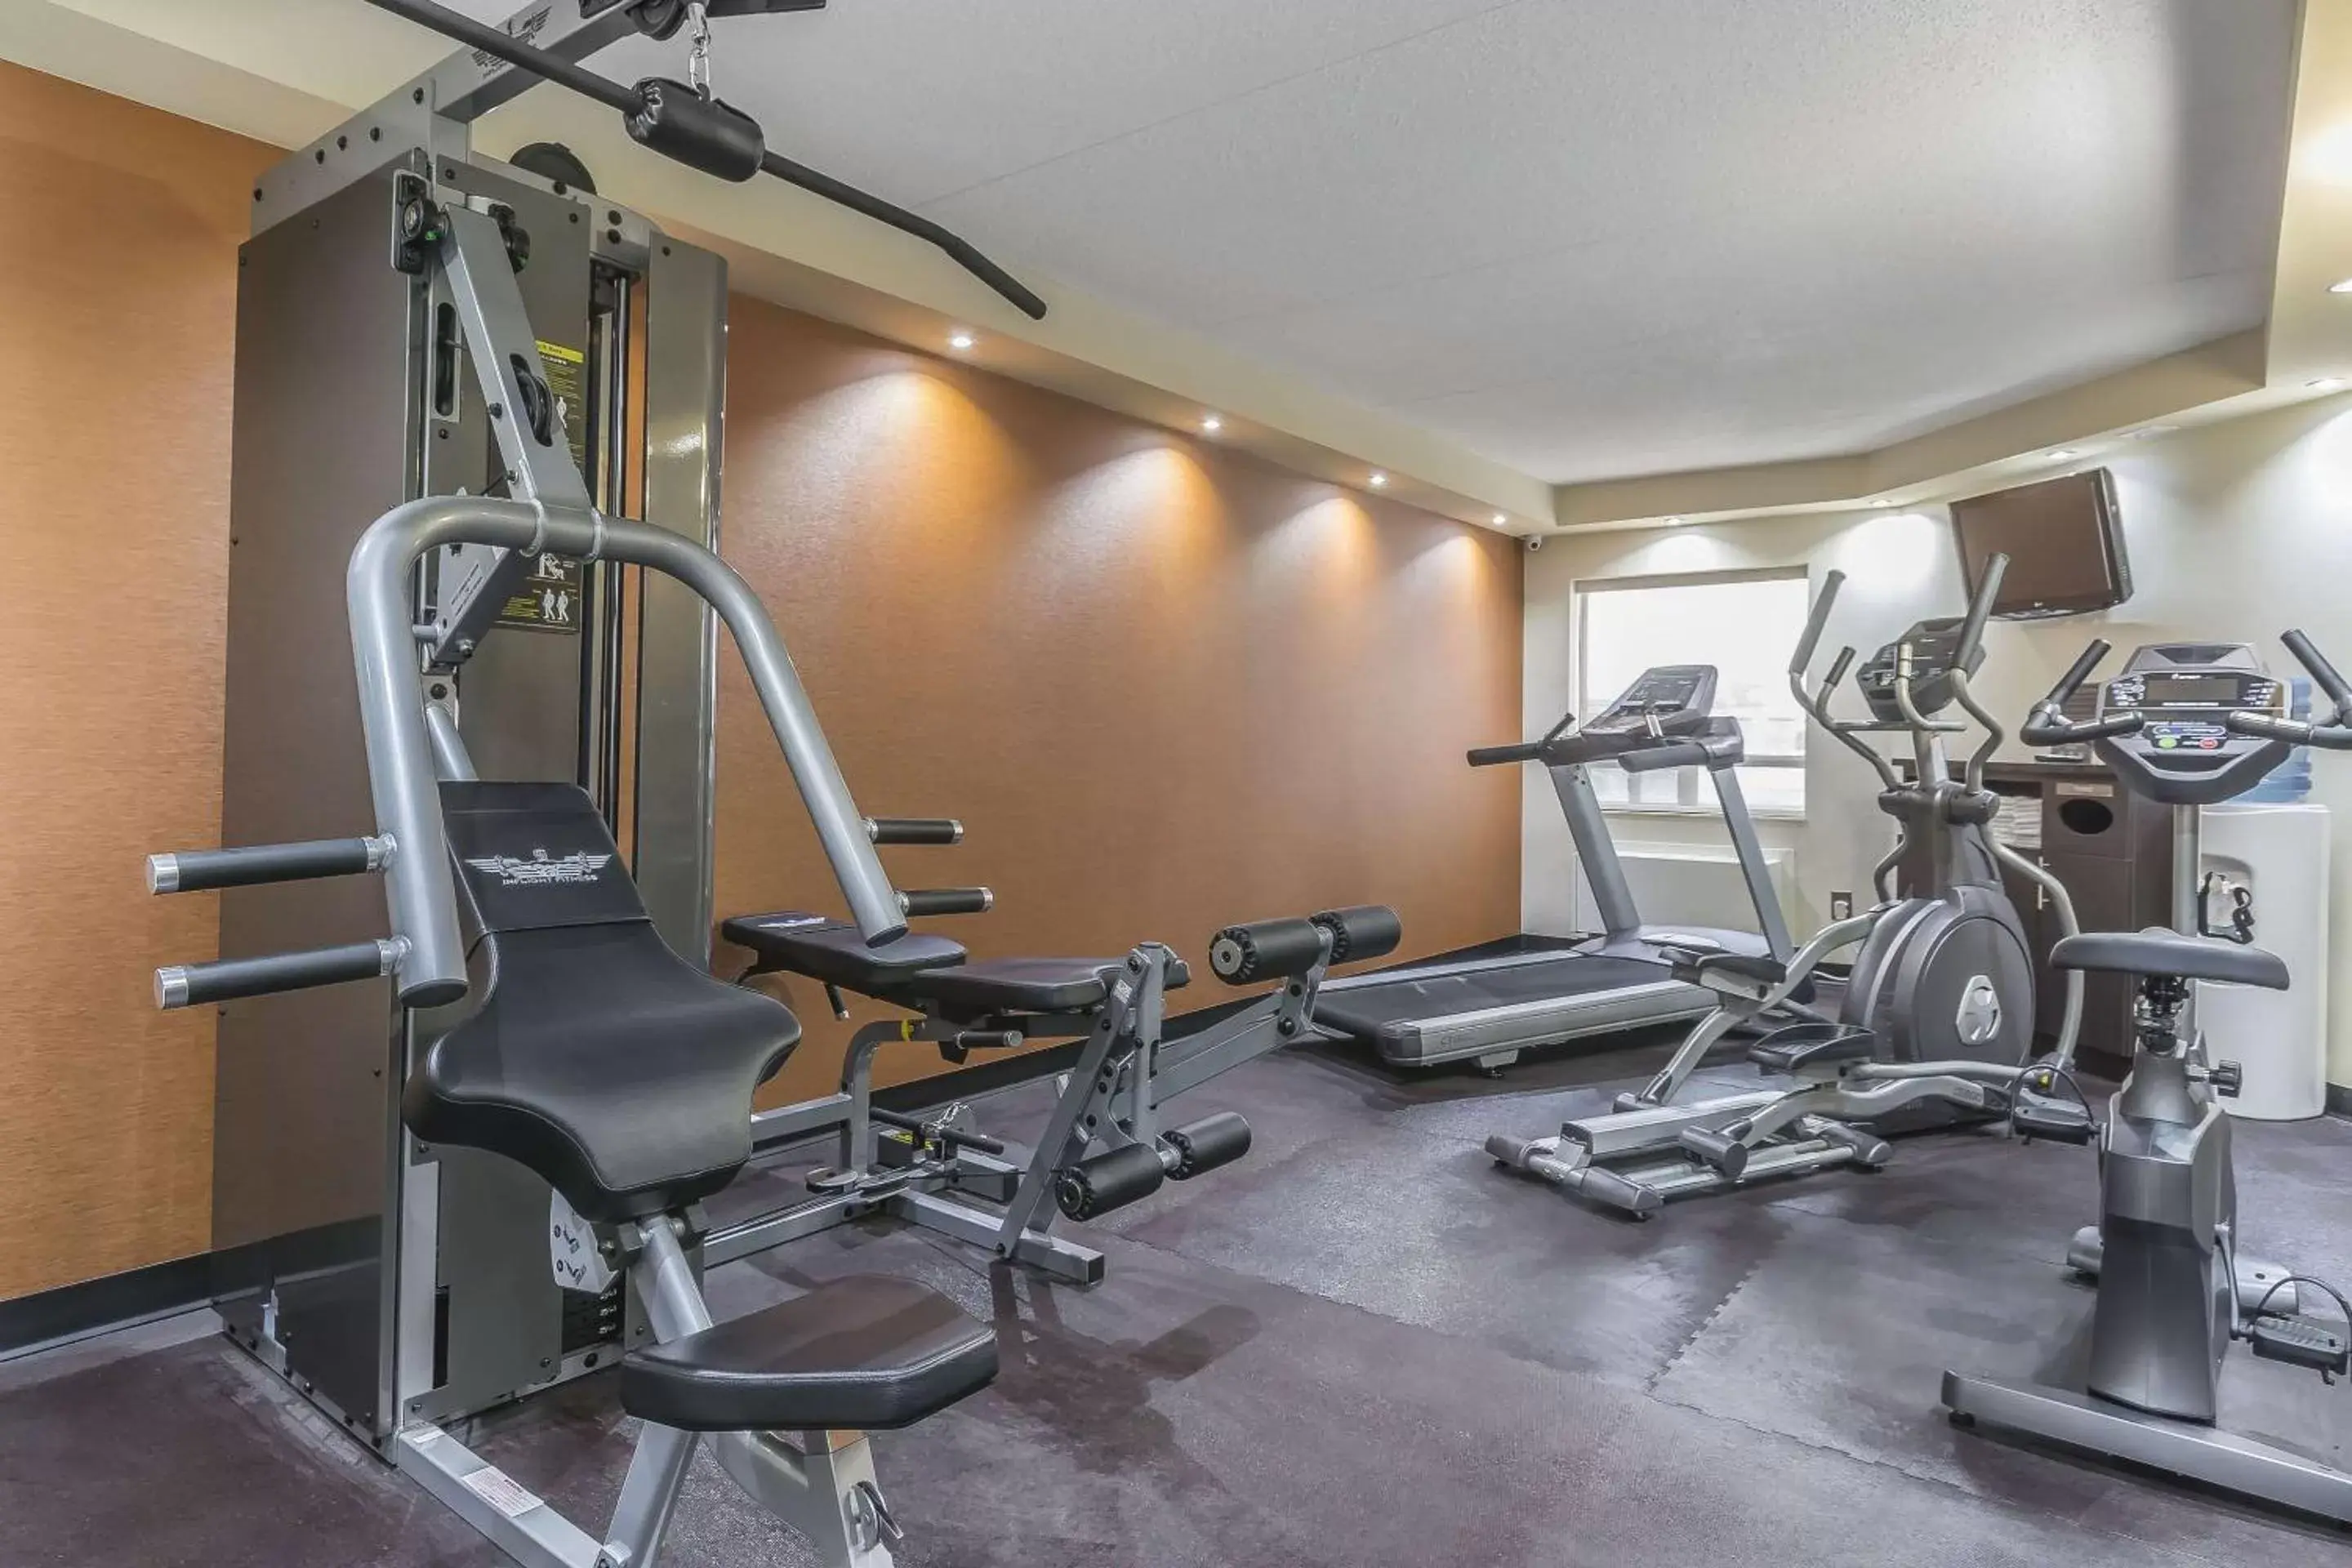 Fitness centre/facilities, Fitness Center/Facilities in Comfort Inn Trenton